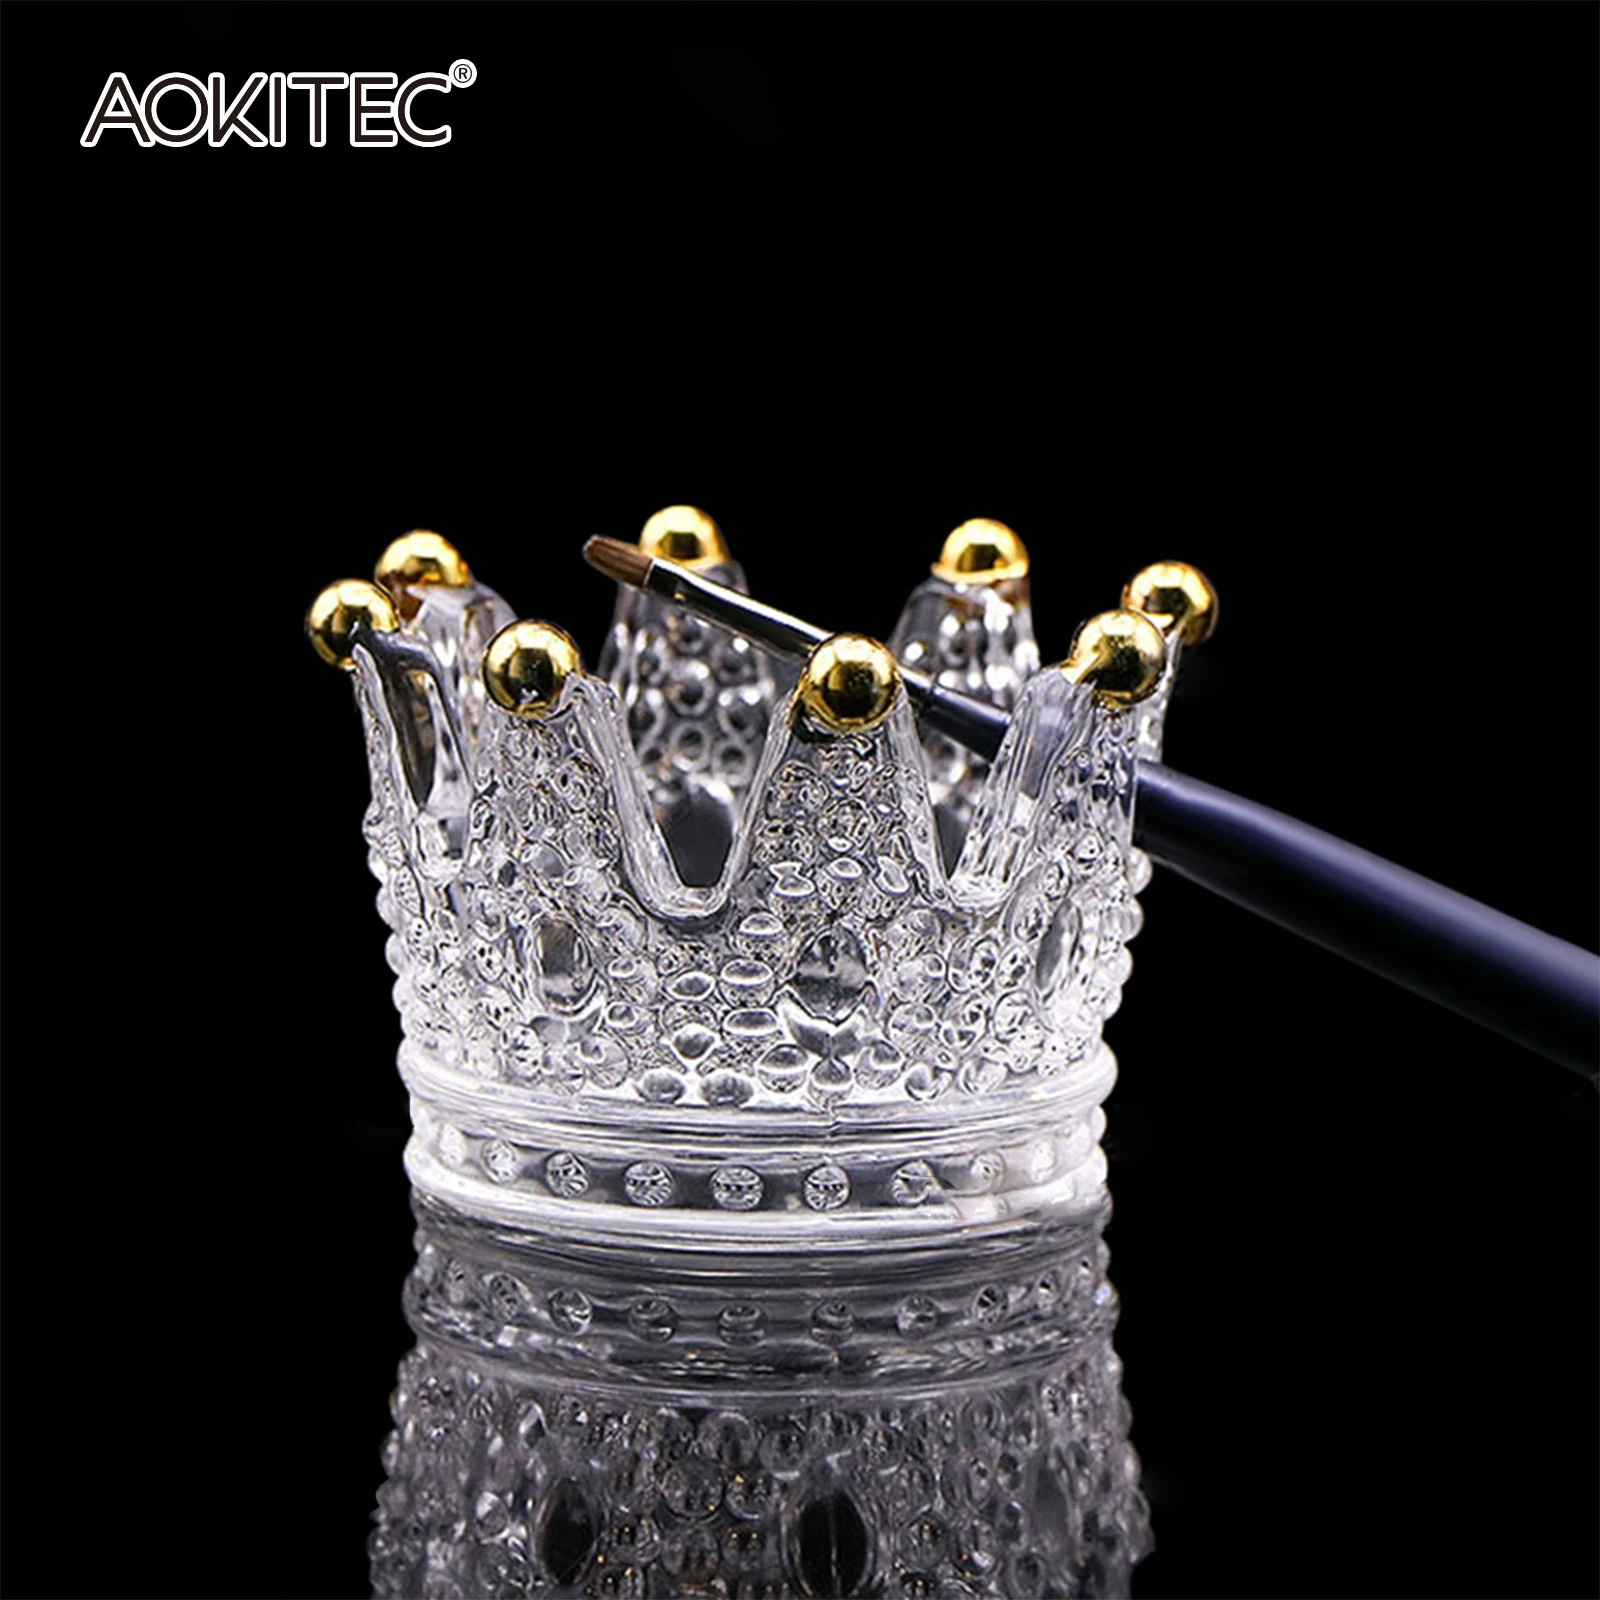 

Акриловая пудра для дизайна ногтей Aokitec Crystal Cup, жидкий мономер, стекло с крышкой, стеклянная чашка